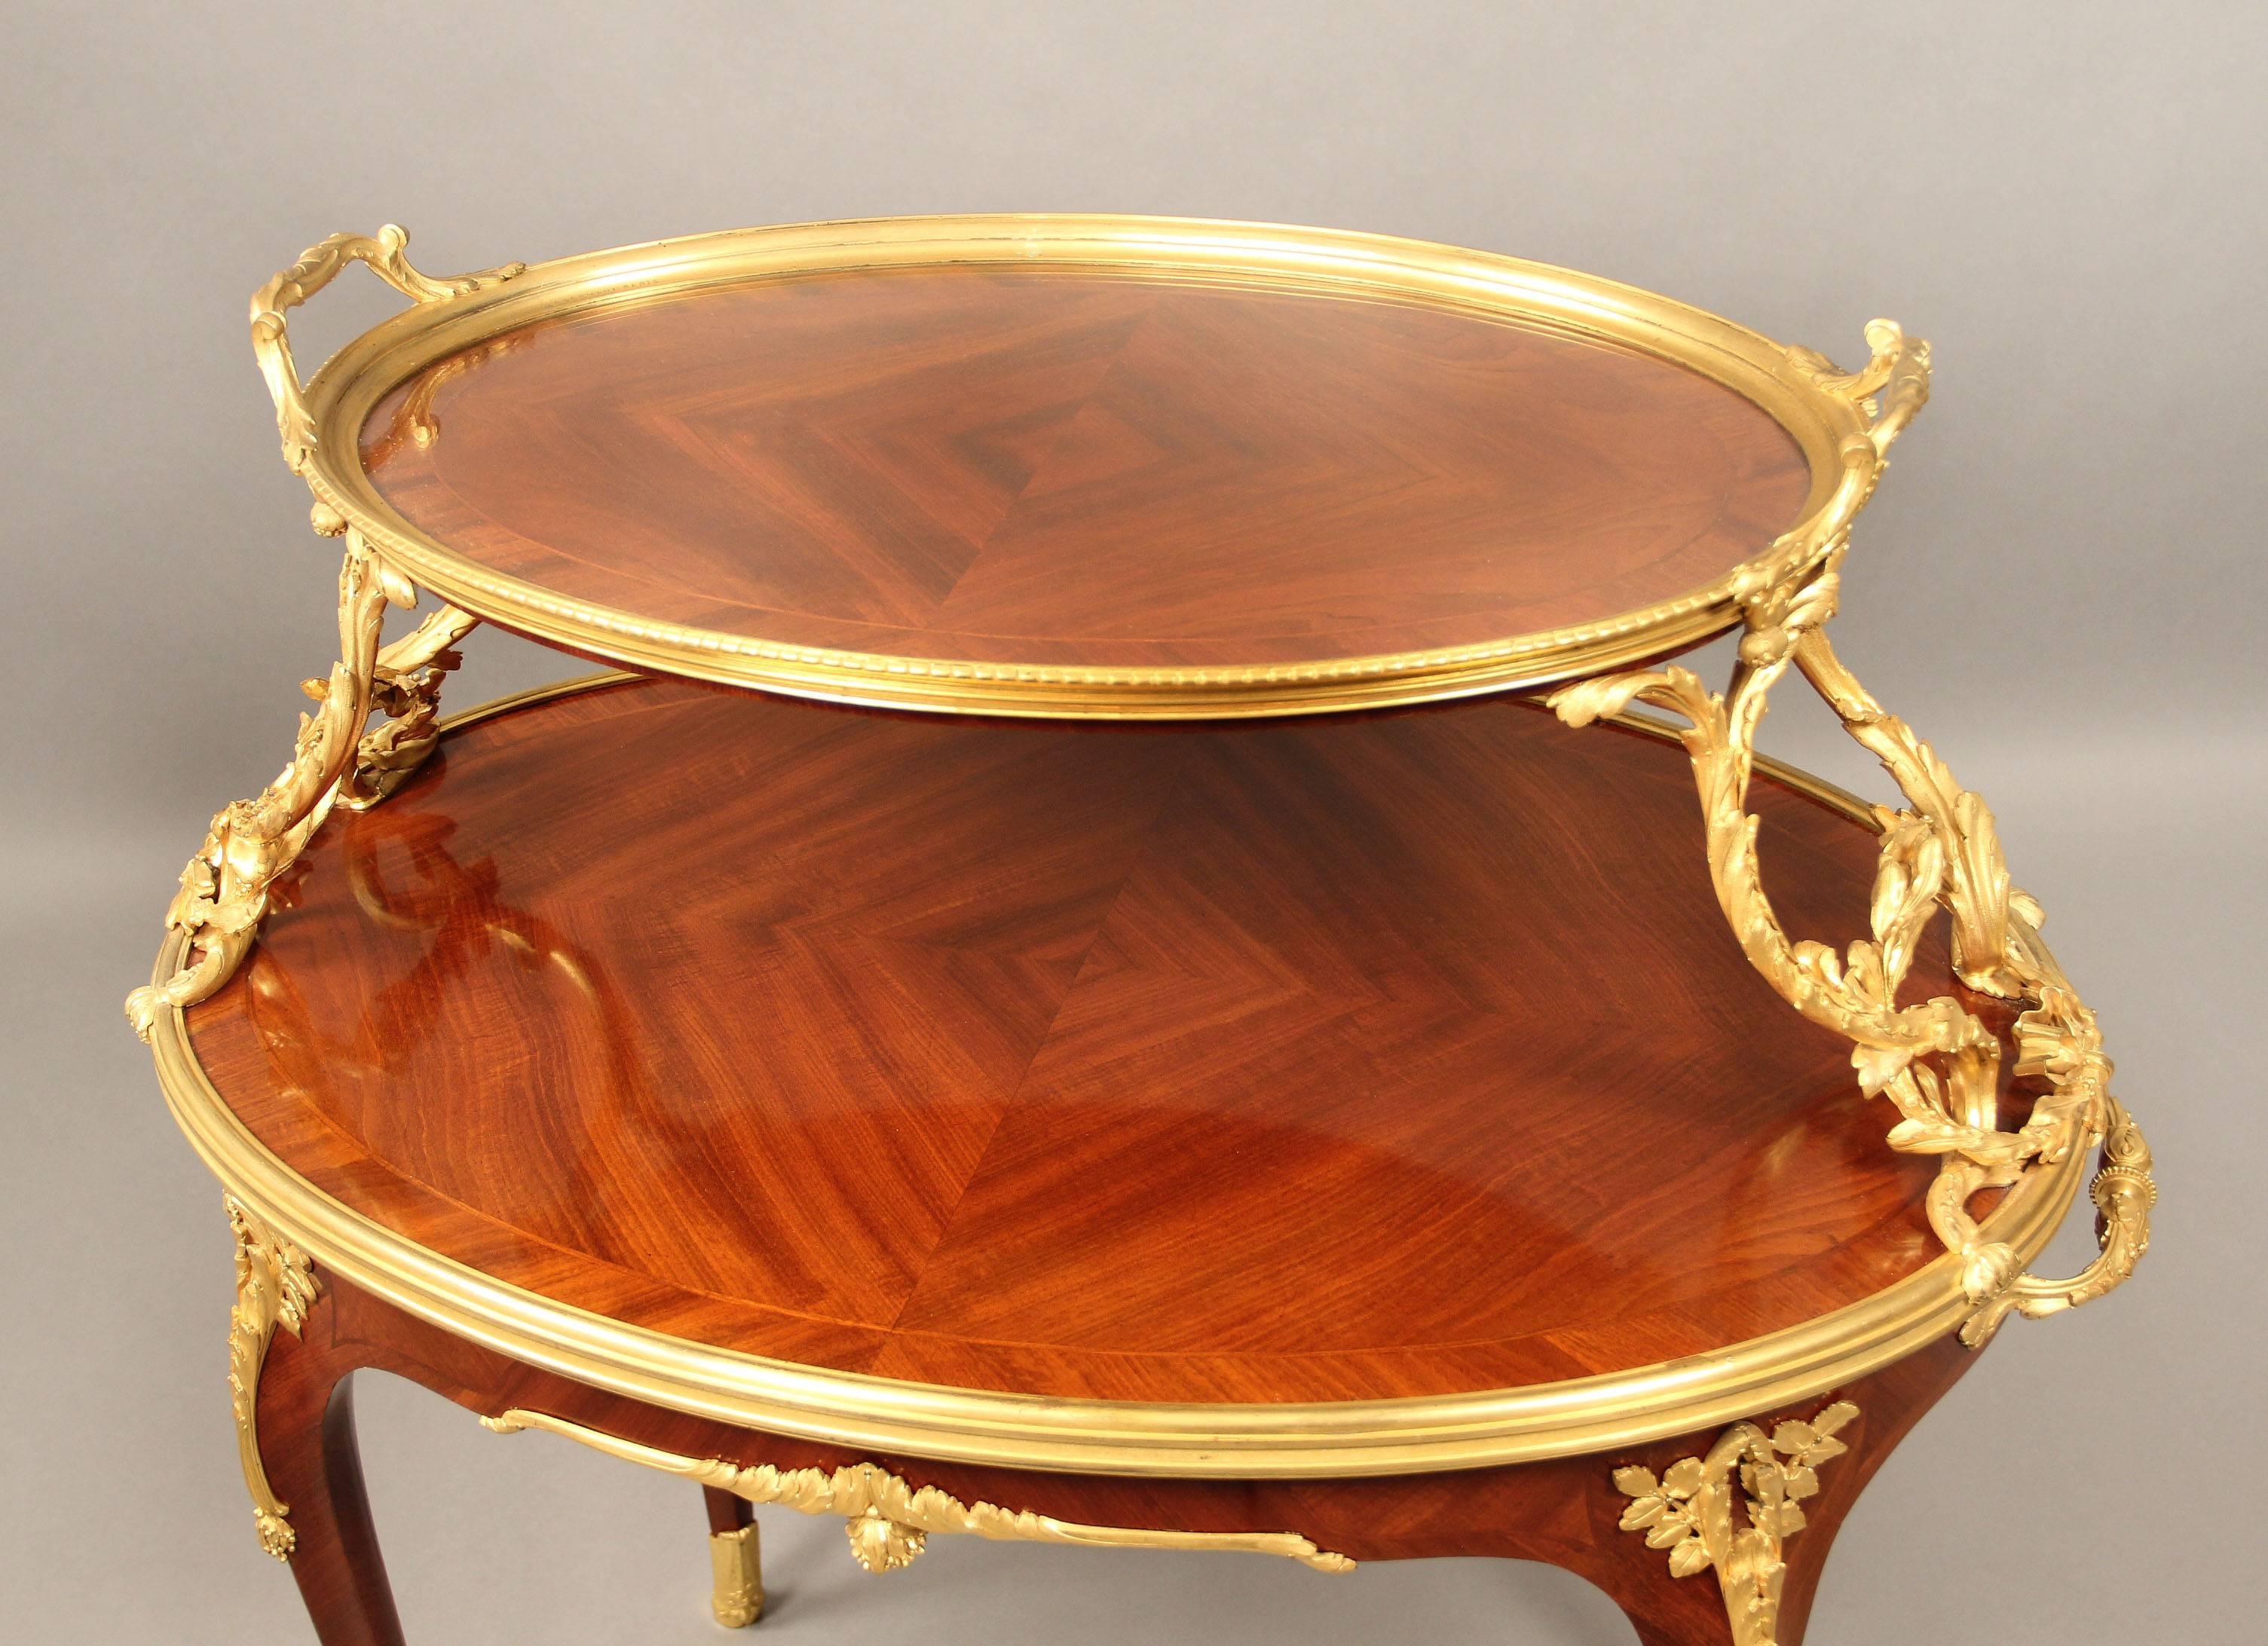 Fine table à thé à deux niveaux de style Louis XV, datant de la fin du XIXe siècle, montée en bronze doré.

Par Paul Sormani.

L'étage supérieur, de forme ovale, est surmonté d'un plateau en verre amovible encadré de bronze et maintenu de chaque